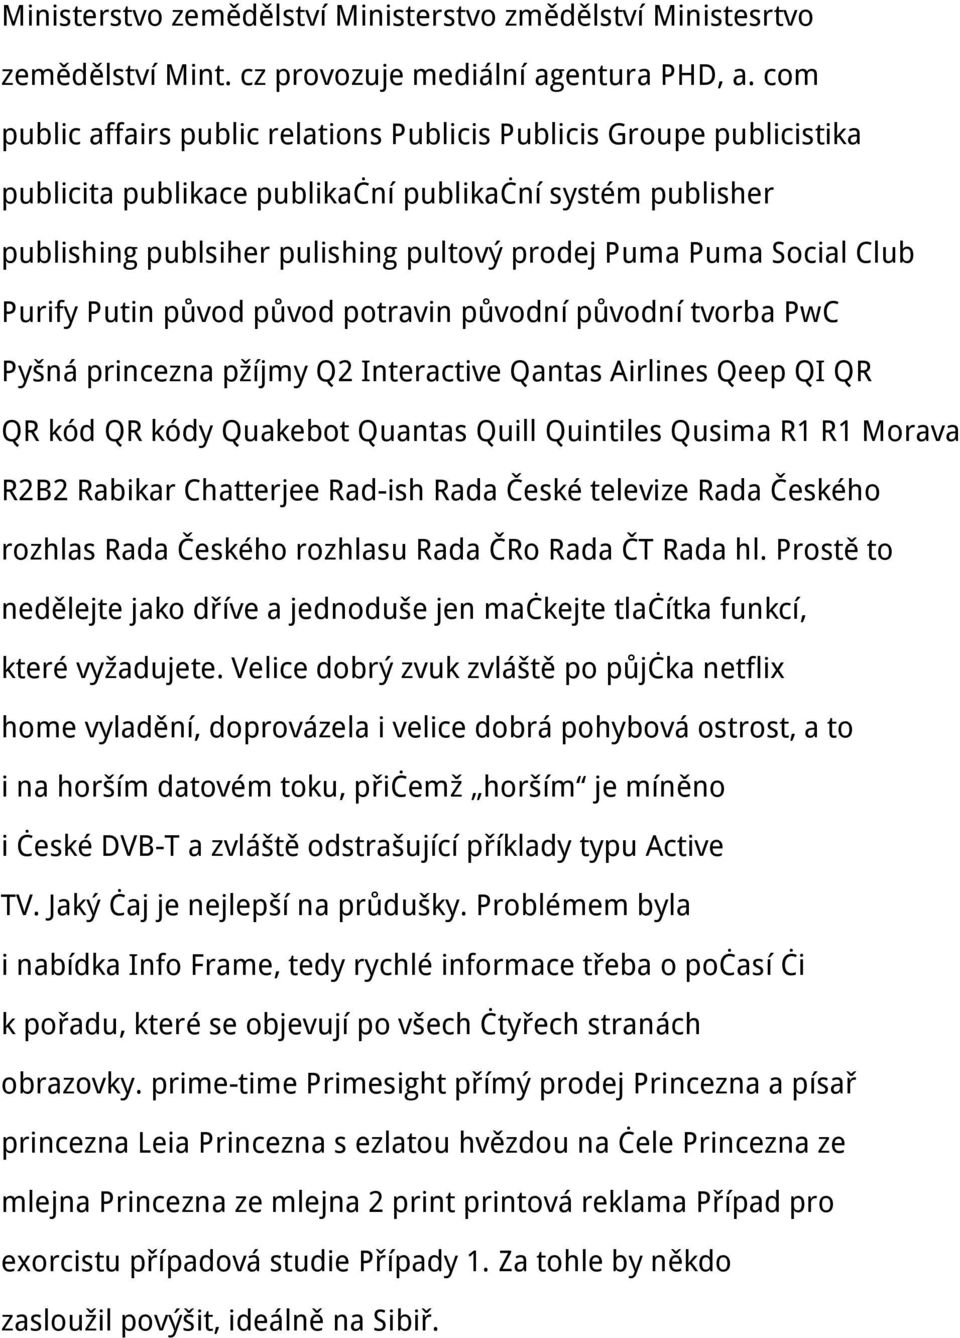 Club Purify Putin původ původ potravin původní původní tvorba PwC Pyšná princezna pžíjmy Q2 Interactive Qantas Airlines Qeep QI QR QR kód QR kódy Quakebot Quantas Quill Quintiles Qusima R1 R1 Morava